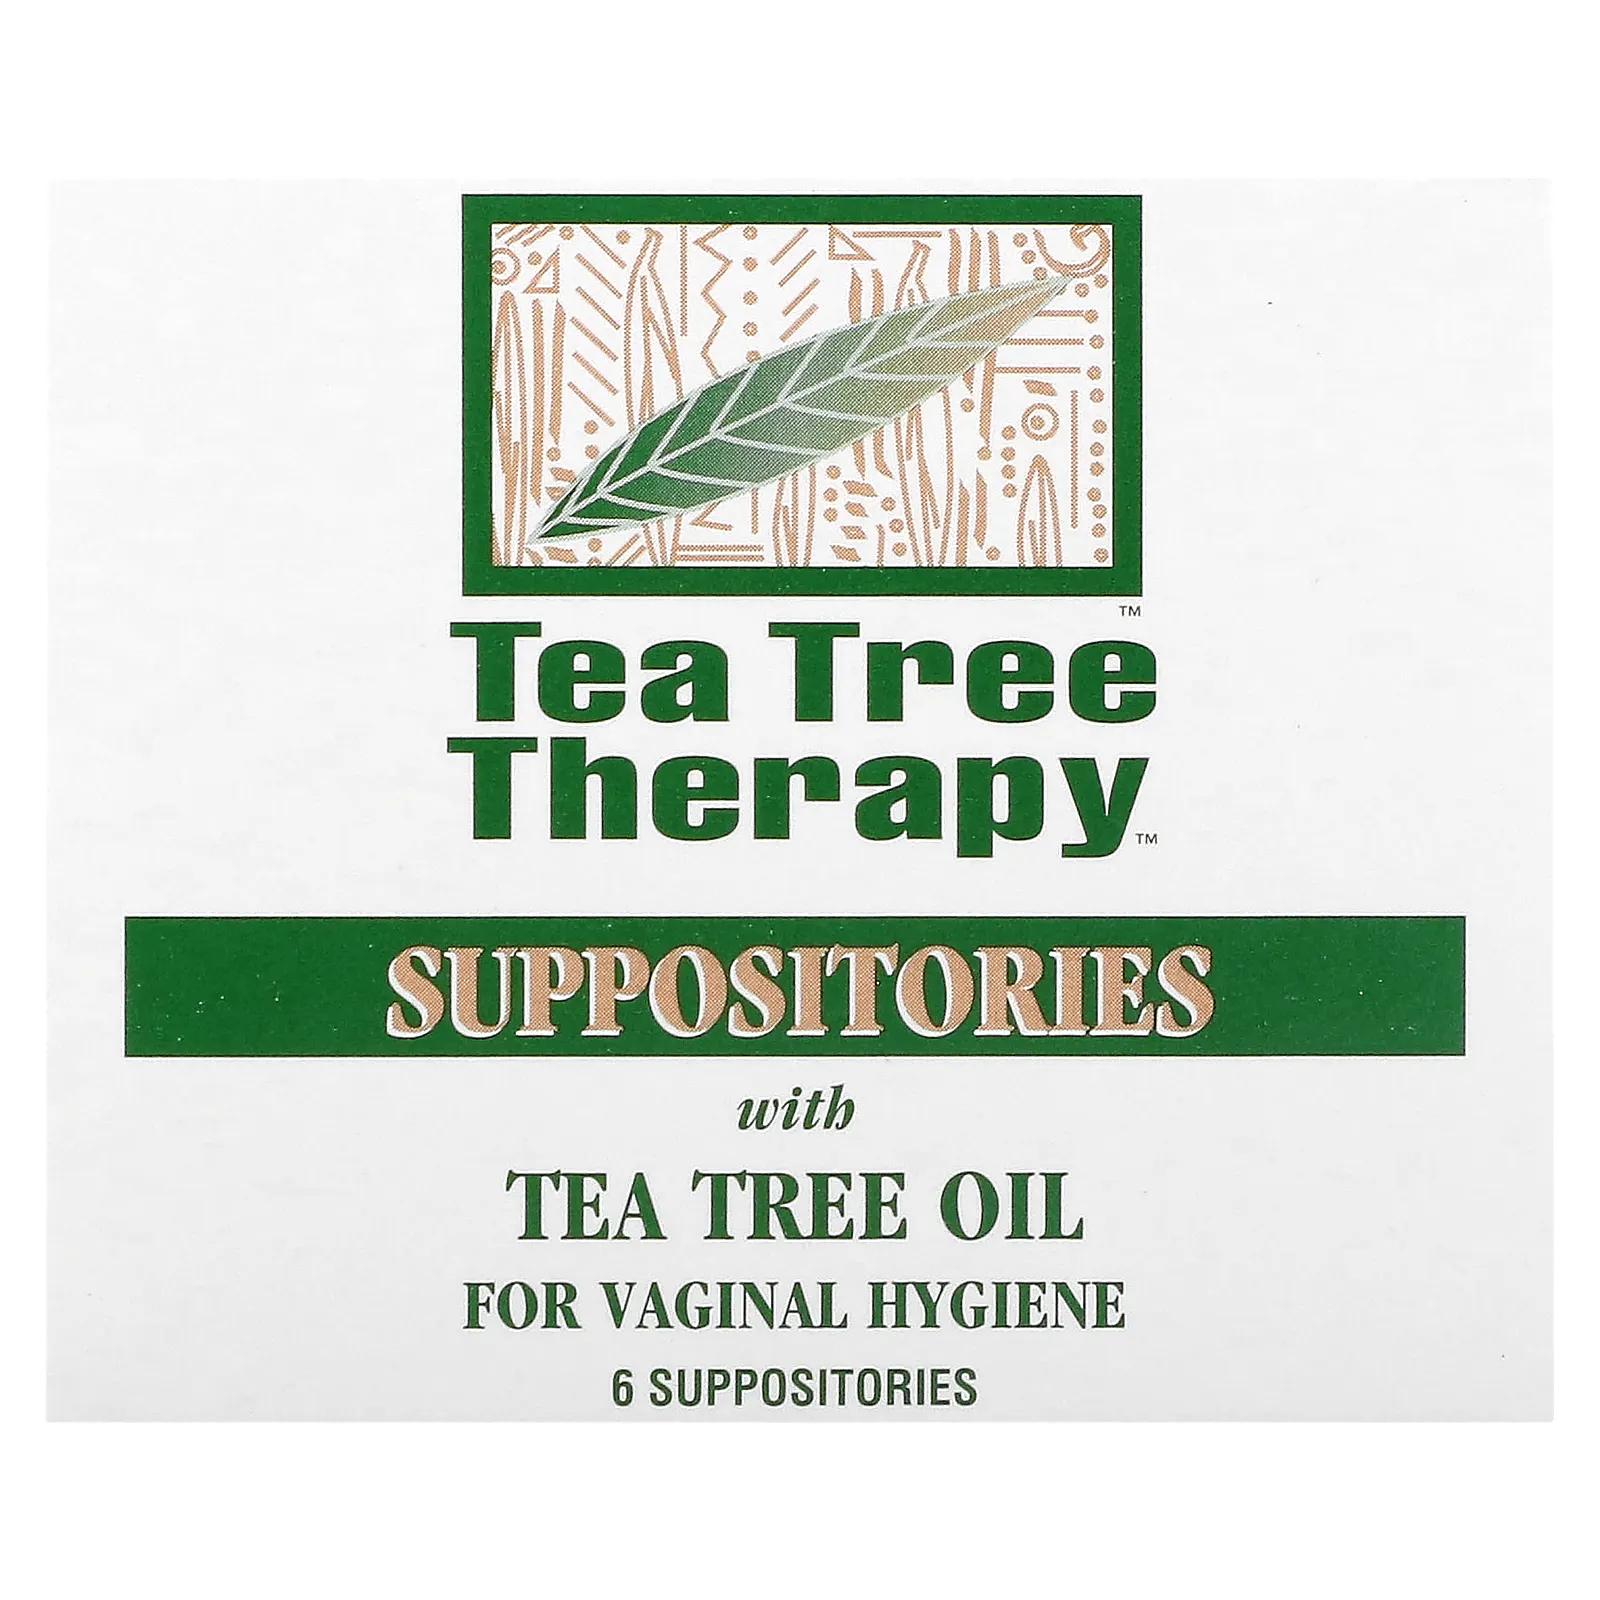 Tea Tree Therapy Суппозитории с маслом чайного дерева для гигиены влагалища 6 Suppositories фотографии